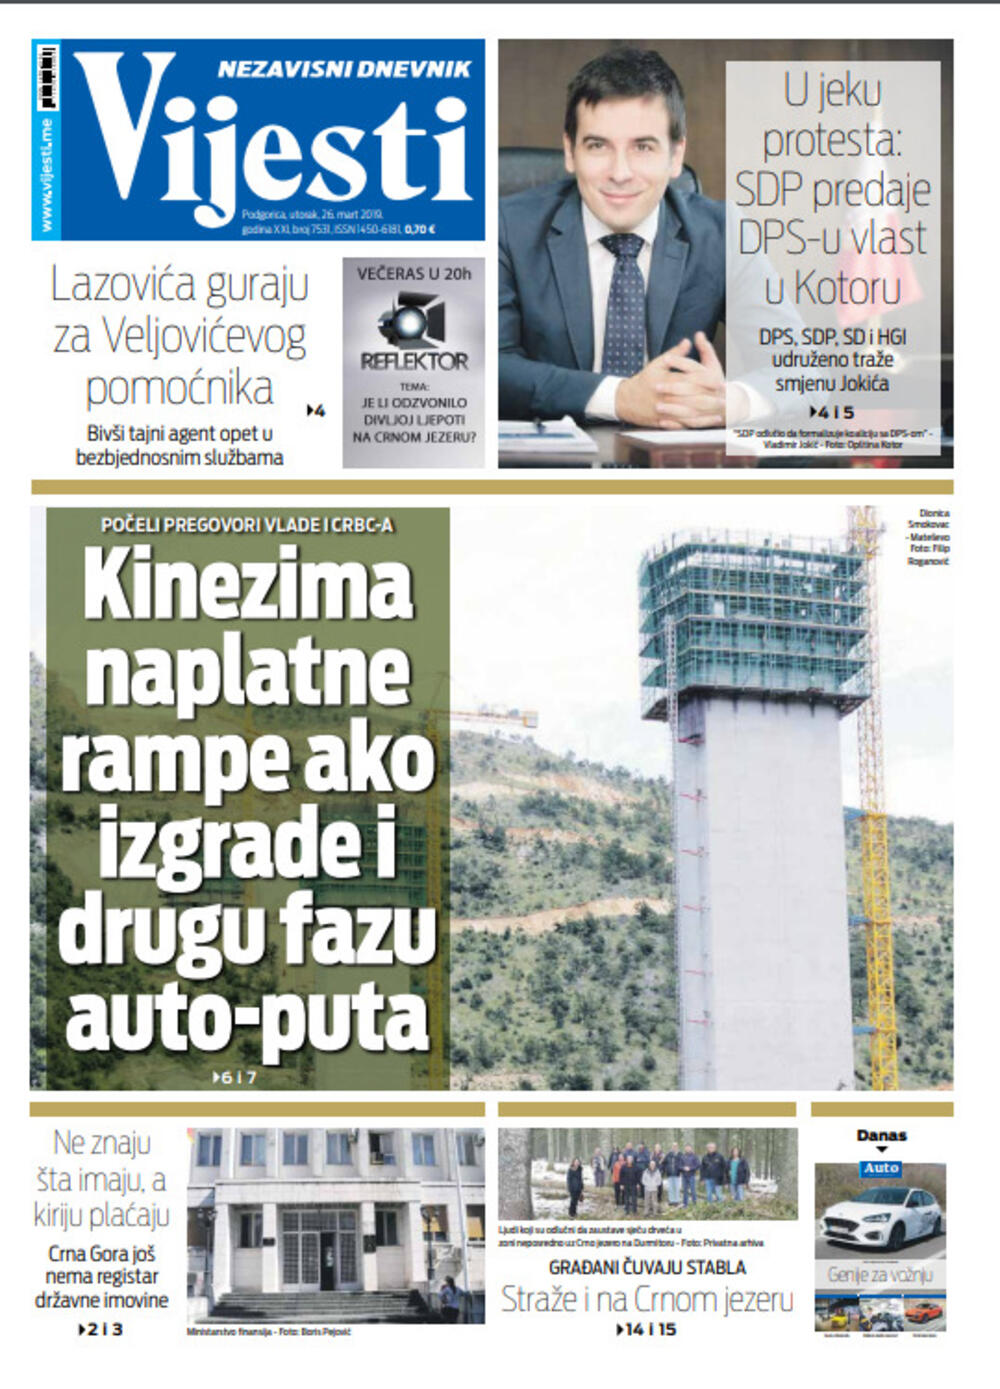 Naslovna strana "Vijesti" za 26. mart, Foto: "Vijesti"